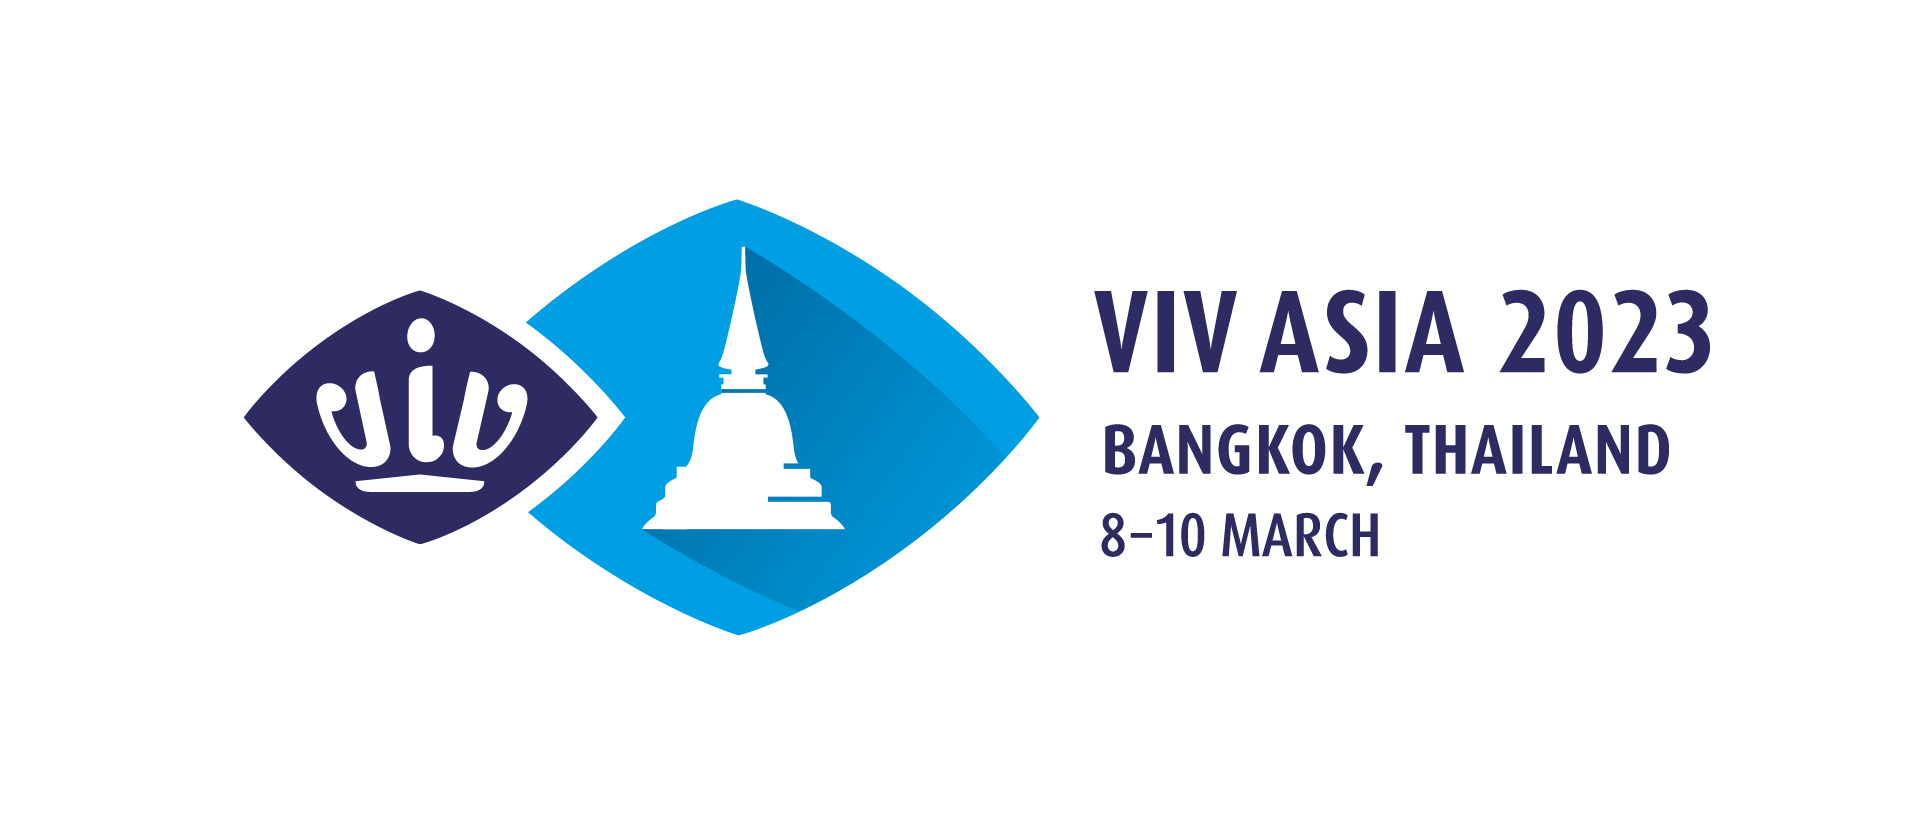 Homepage - VIV Asia